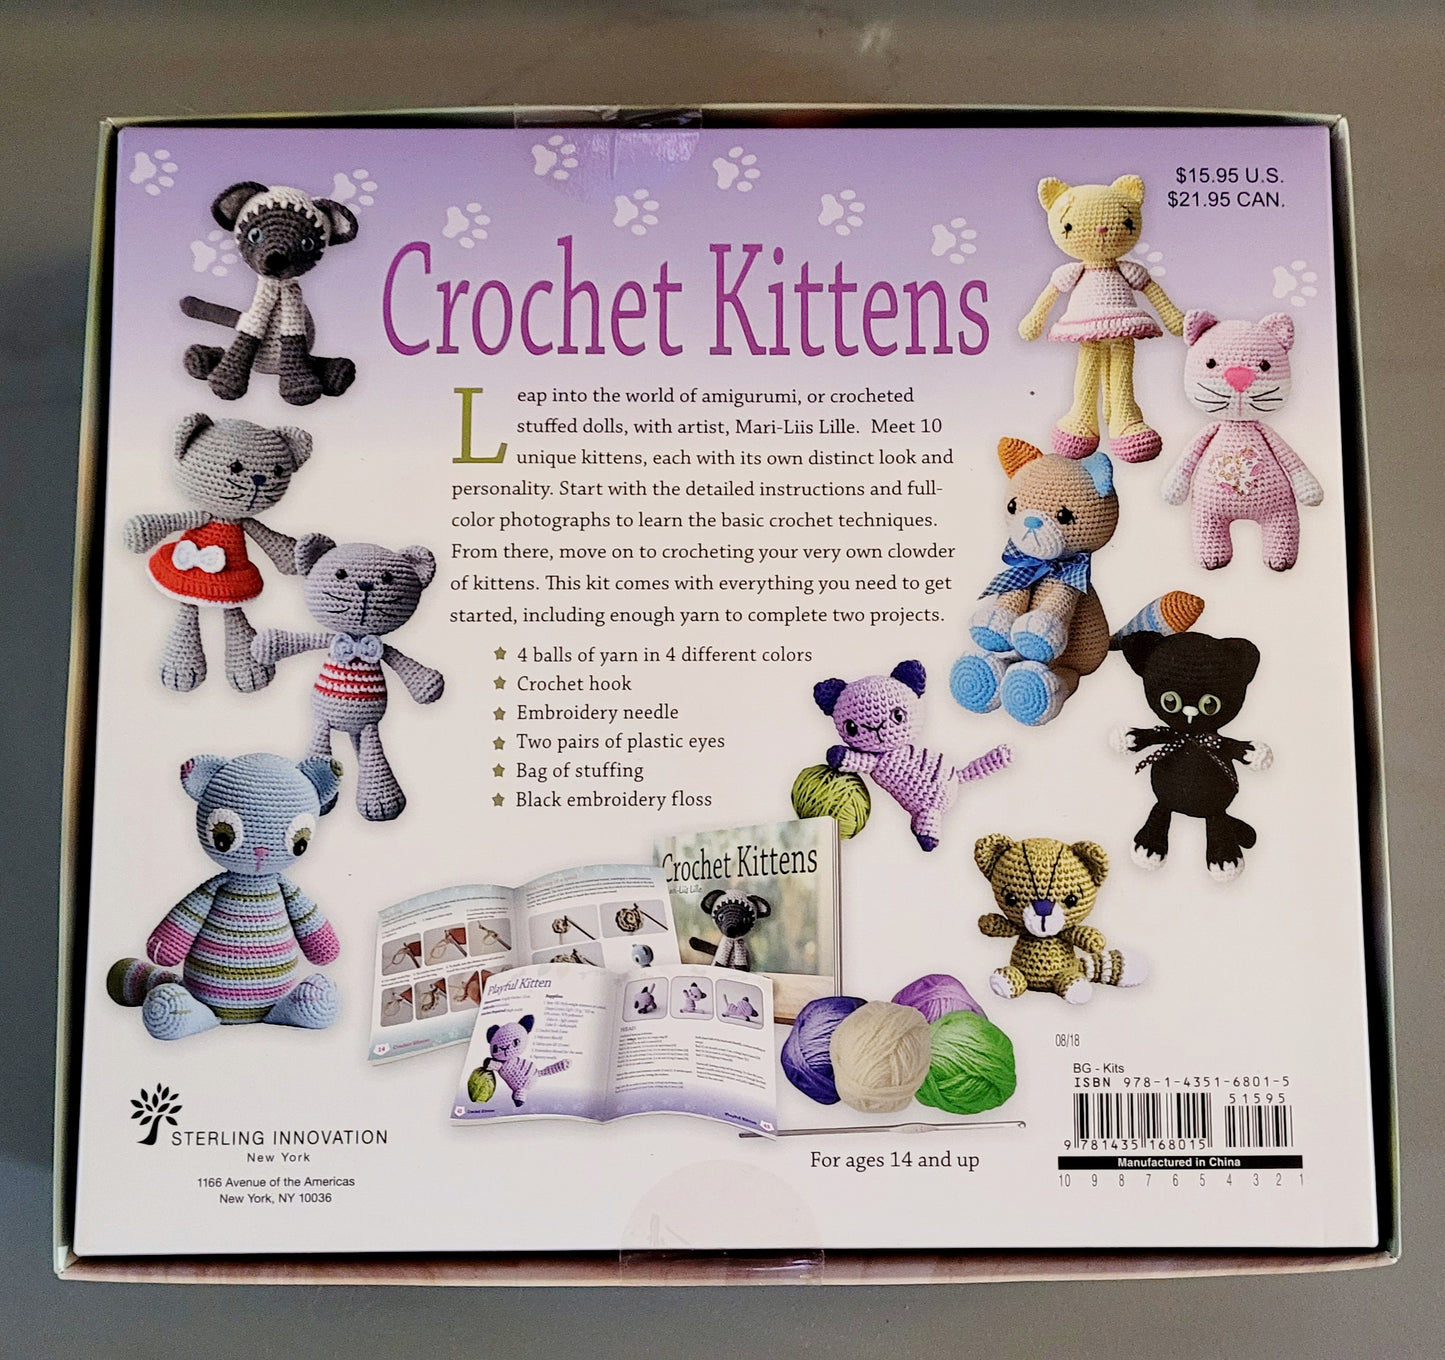 NEW * 10 Crochet Kitten Patterns Boxed Kit